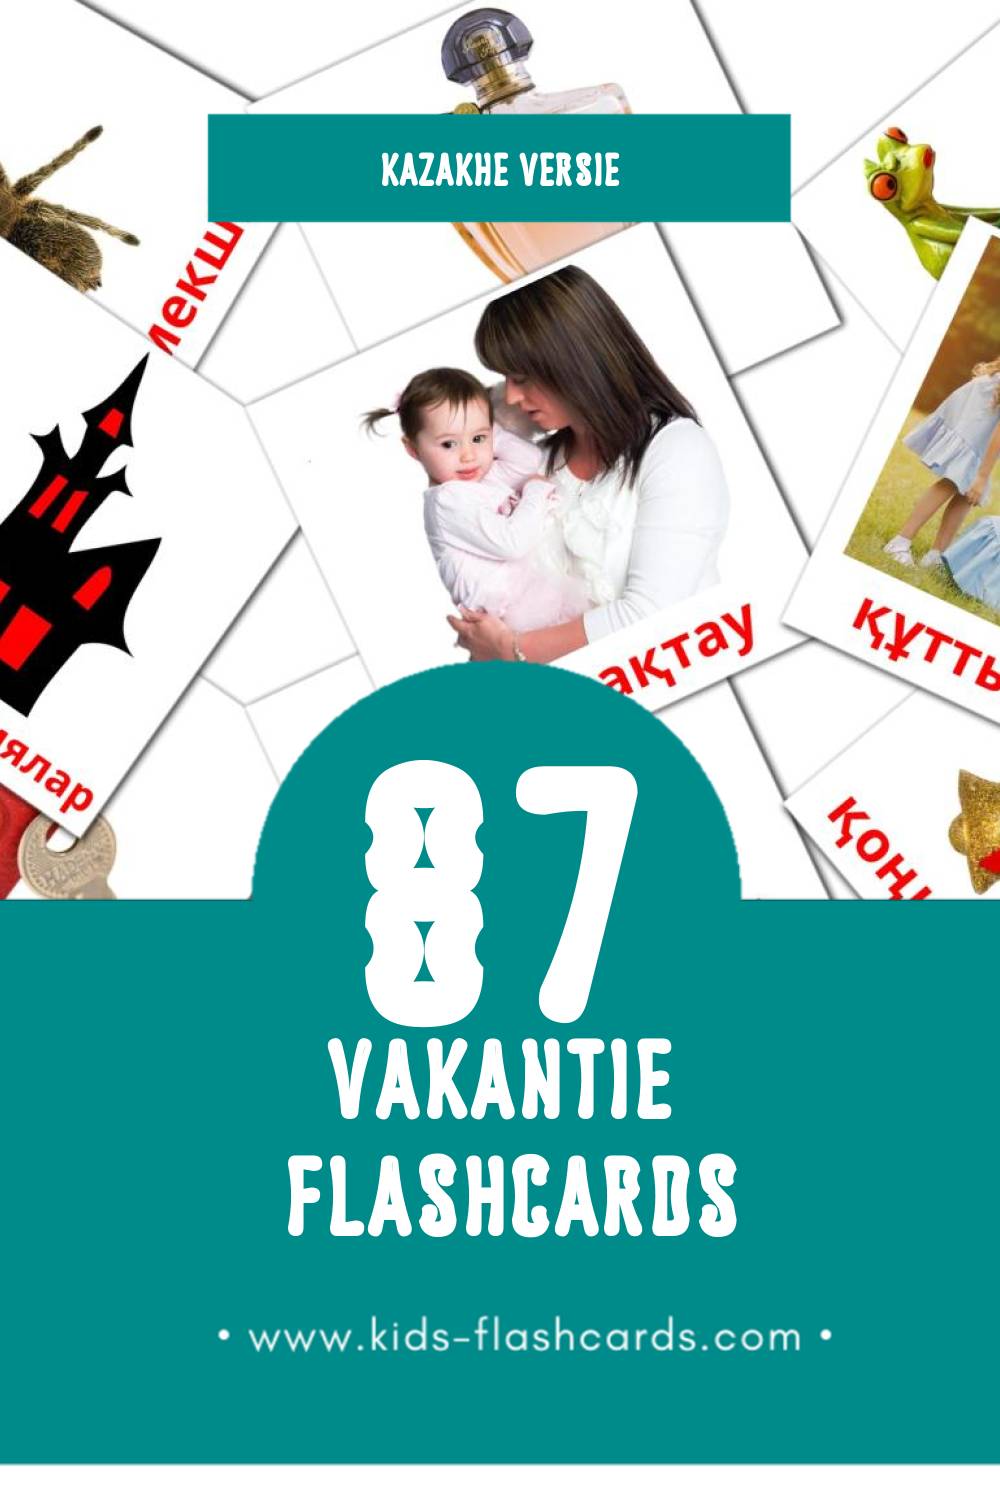 Visuele Мерекелер Flashcards voor Kleuters (87 kaarten in het Kazakh)